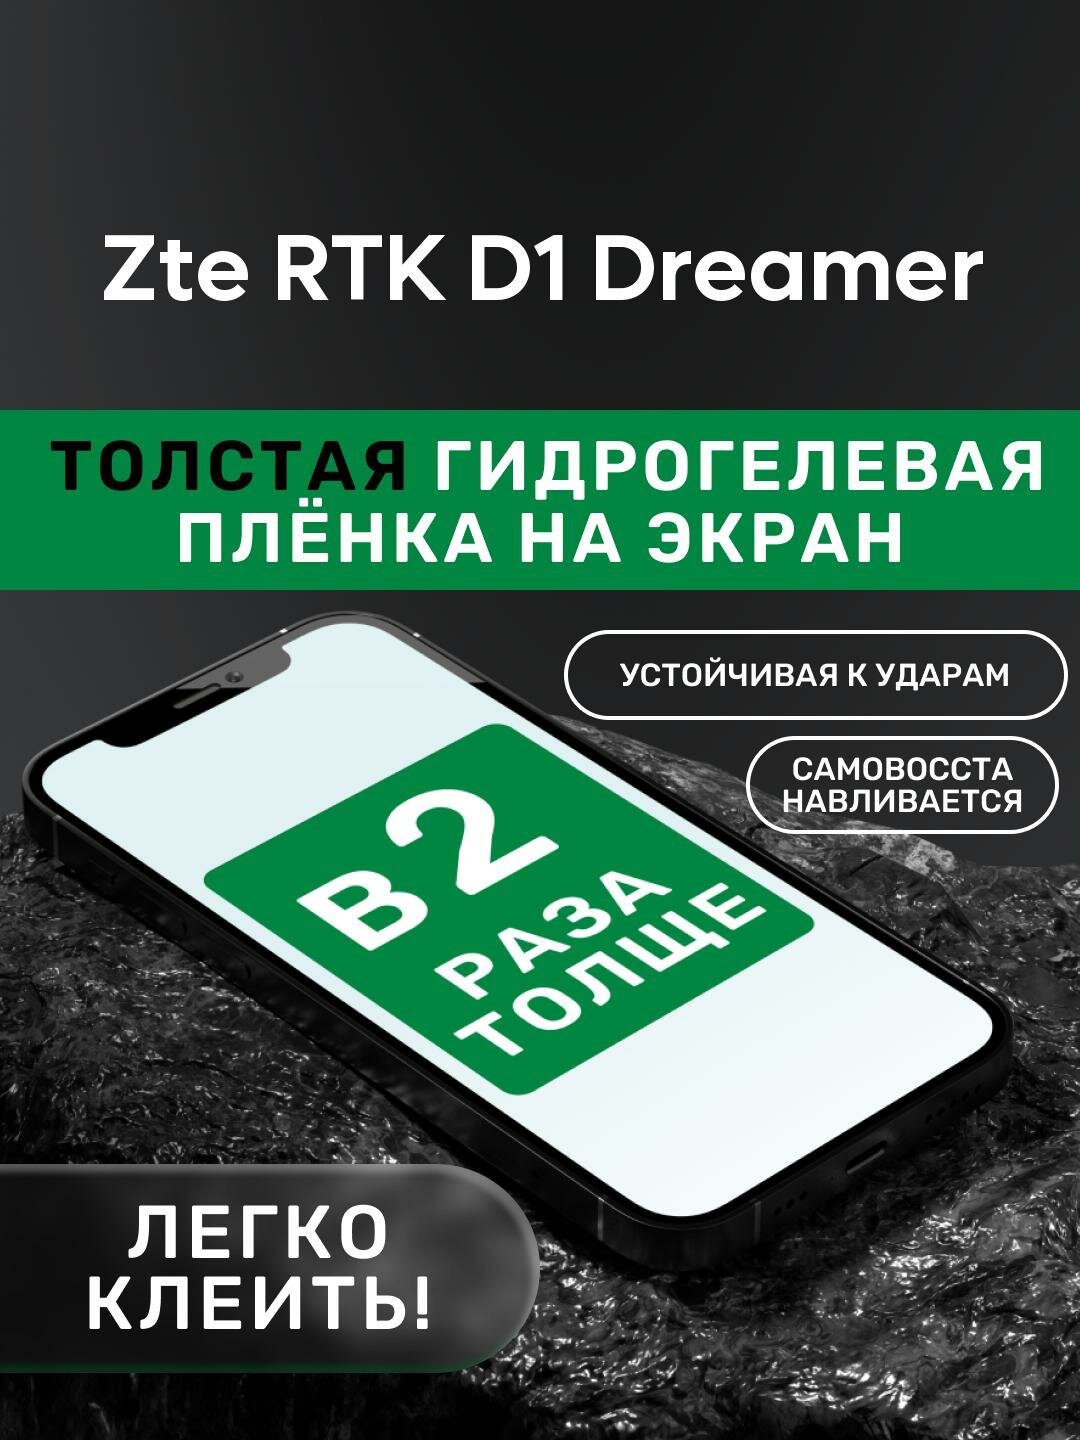 Гидрогелевая утолщённая защитная плёнка на экран для Zte RTK D1 Dreamer